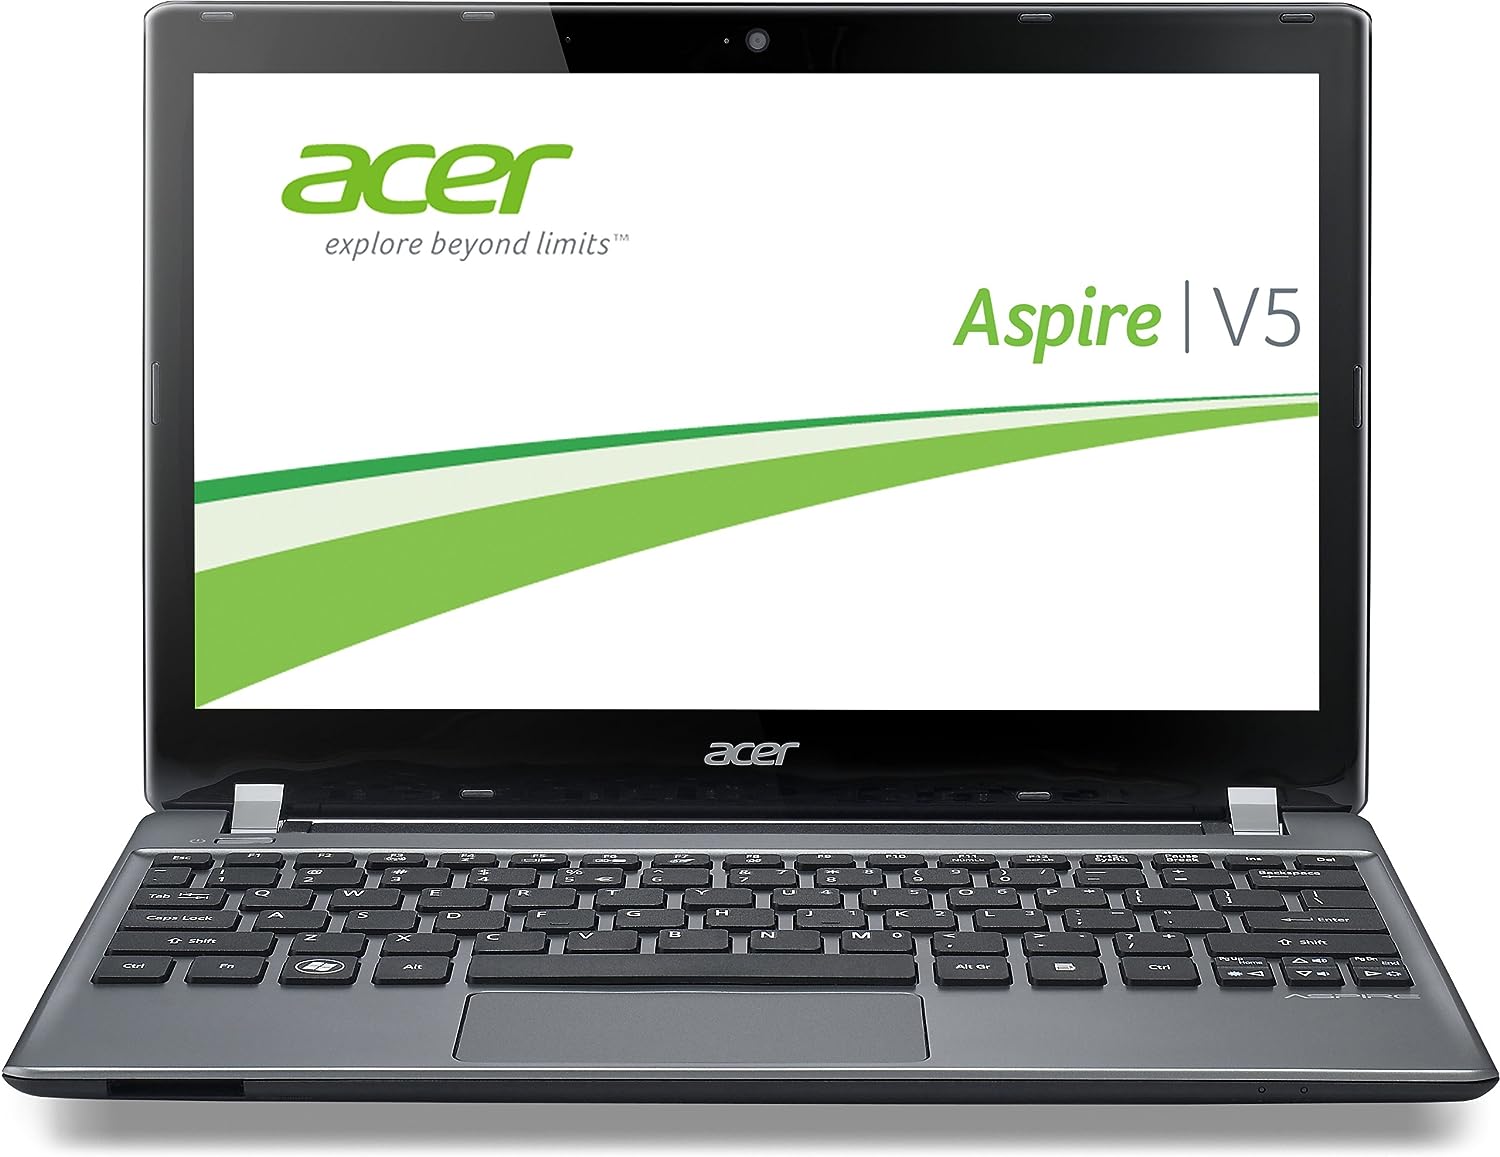 Acer Aspire V5-573P Notebook